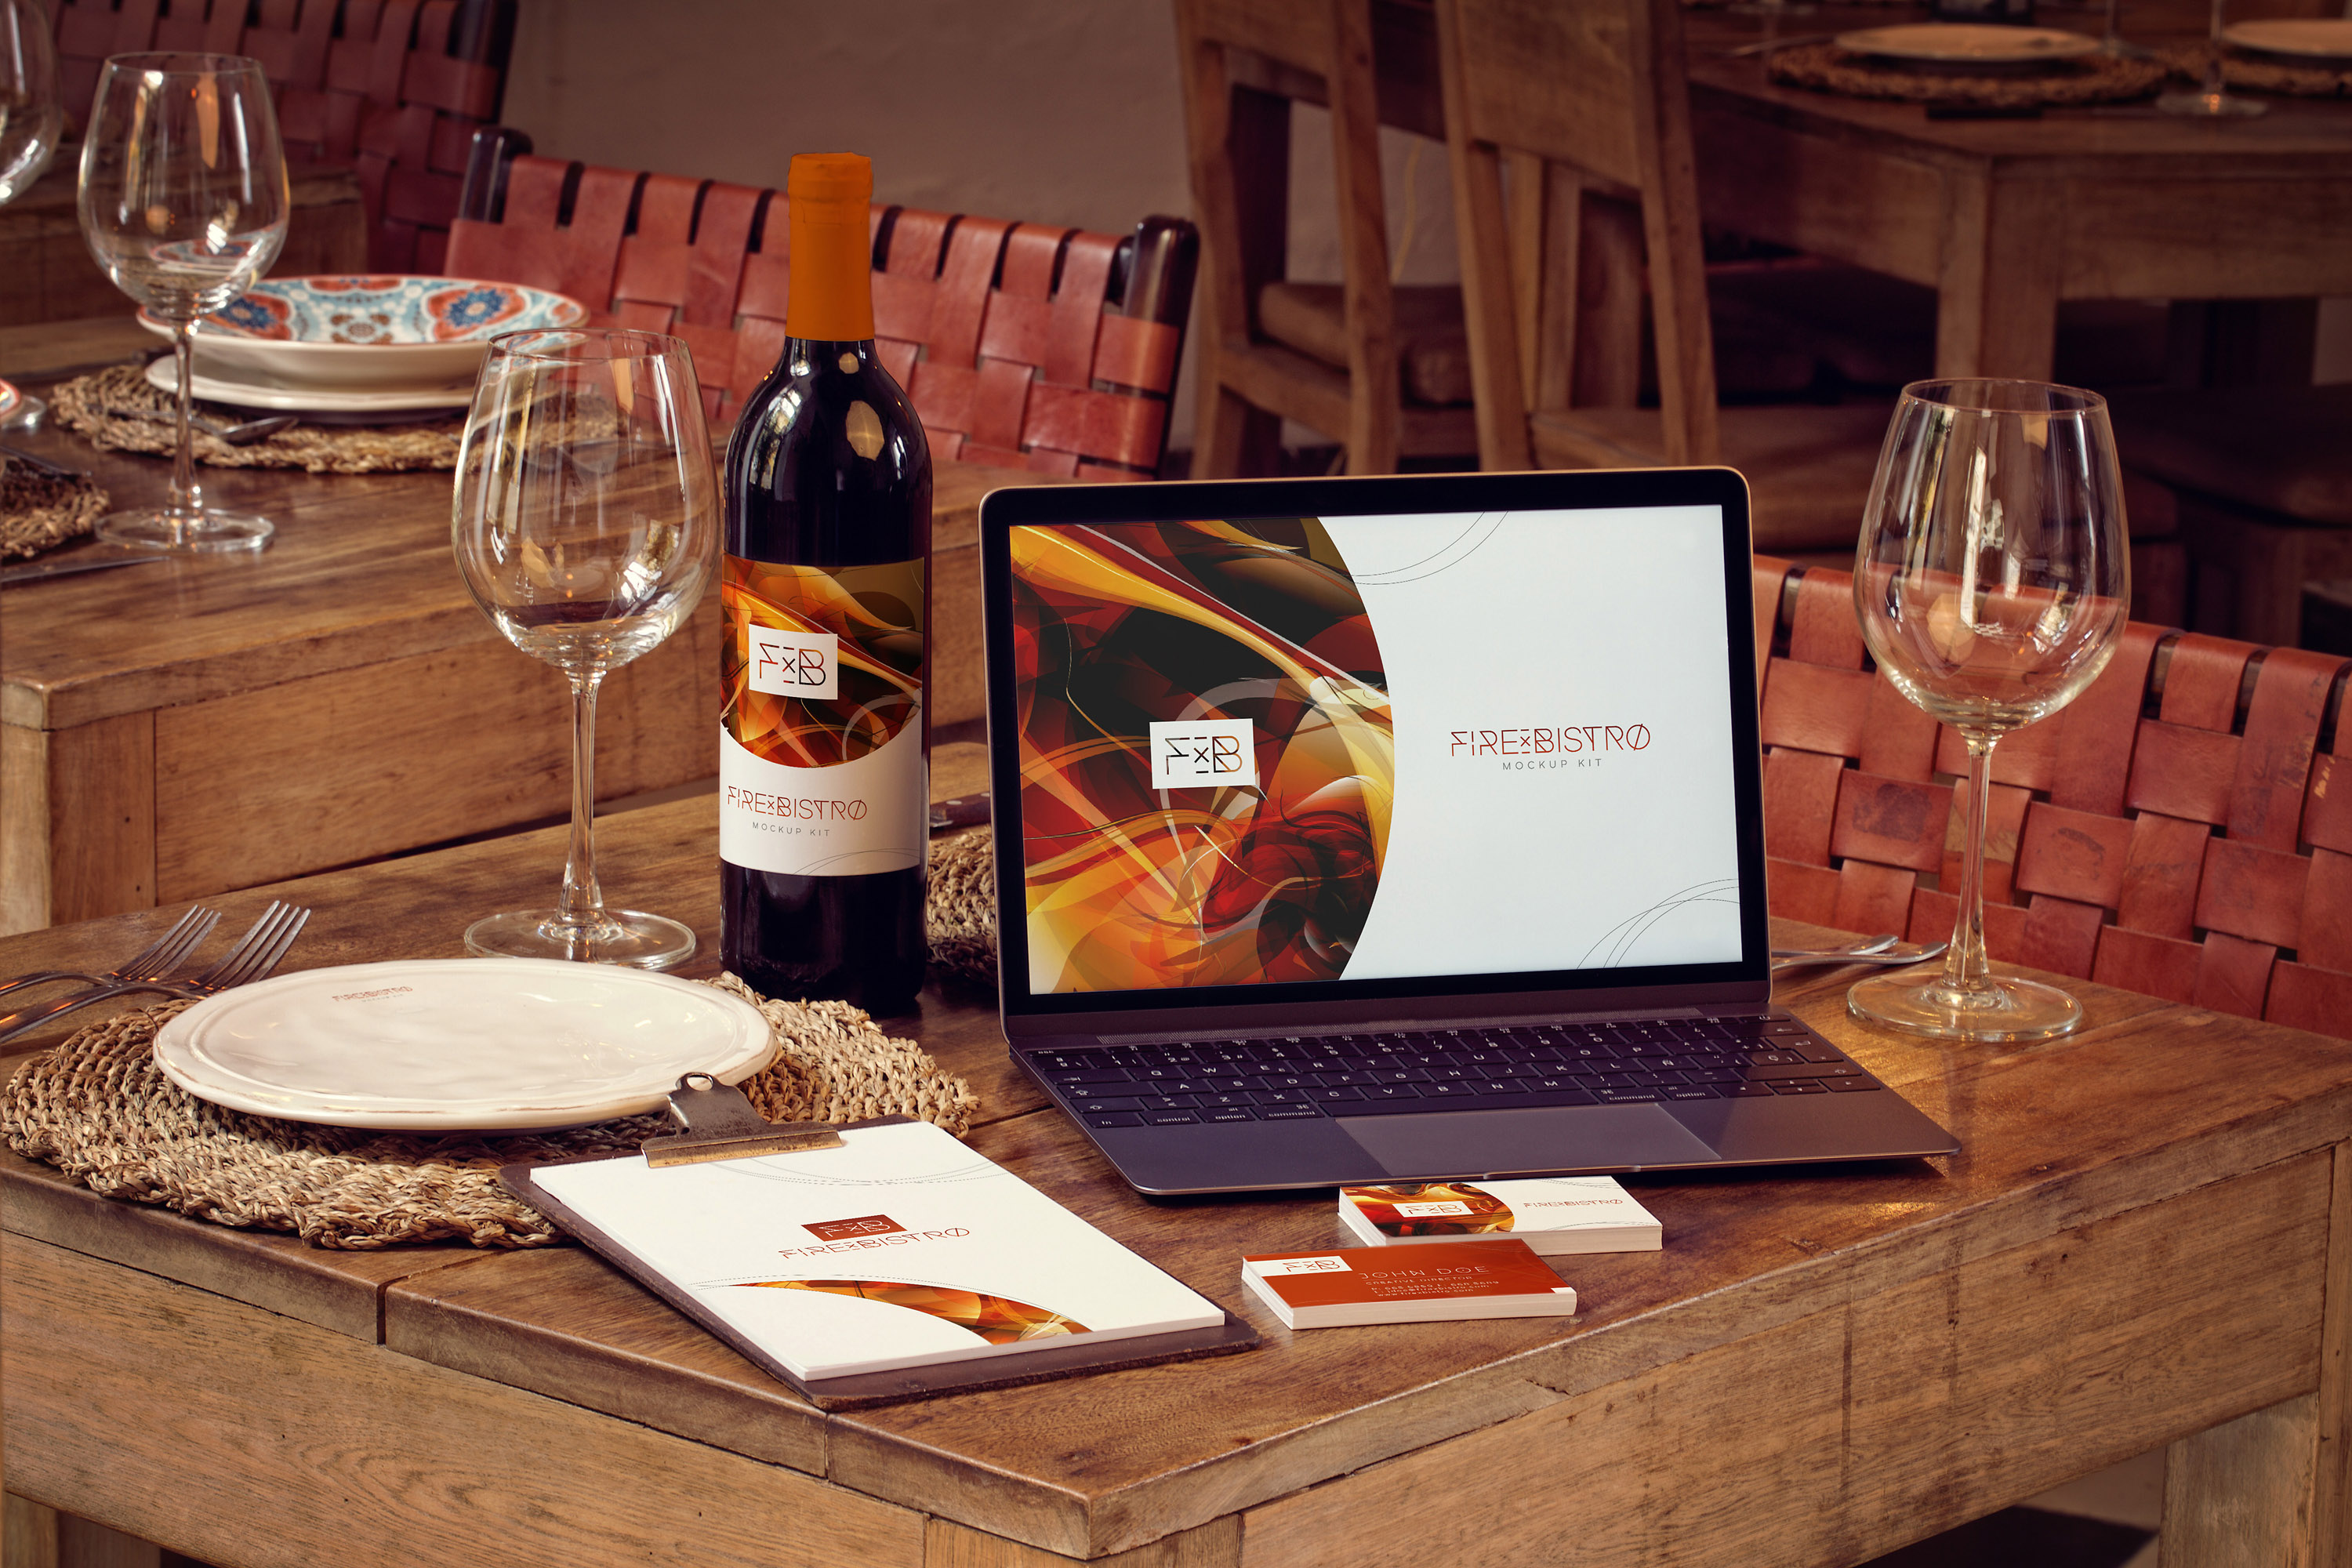 高级餐厅VI视觉设计酒瓶/MacBook/名片/菜单样机模板 Wine Bottle, MacBook, Business Cards and Menu Mockup插图